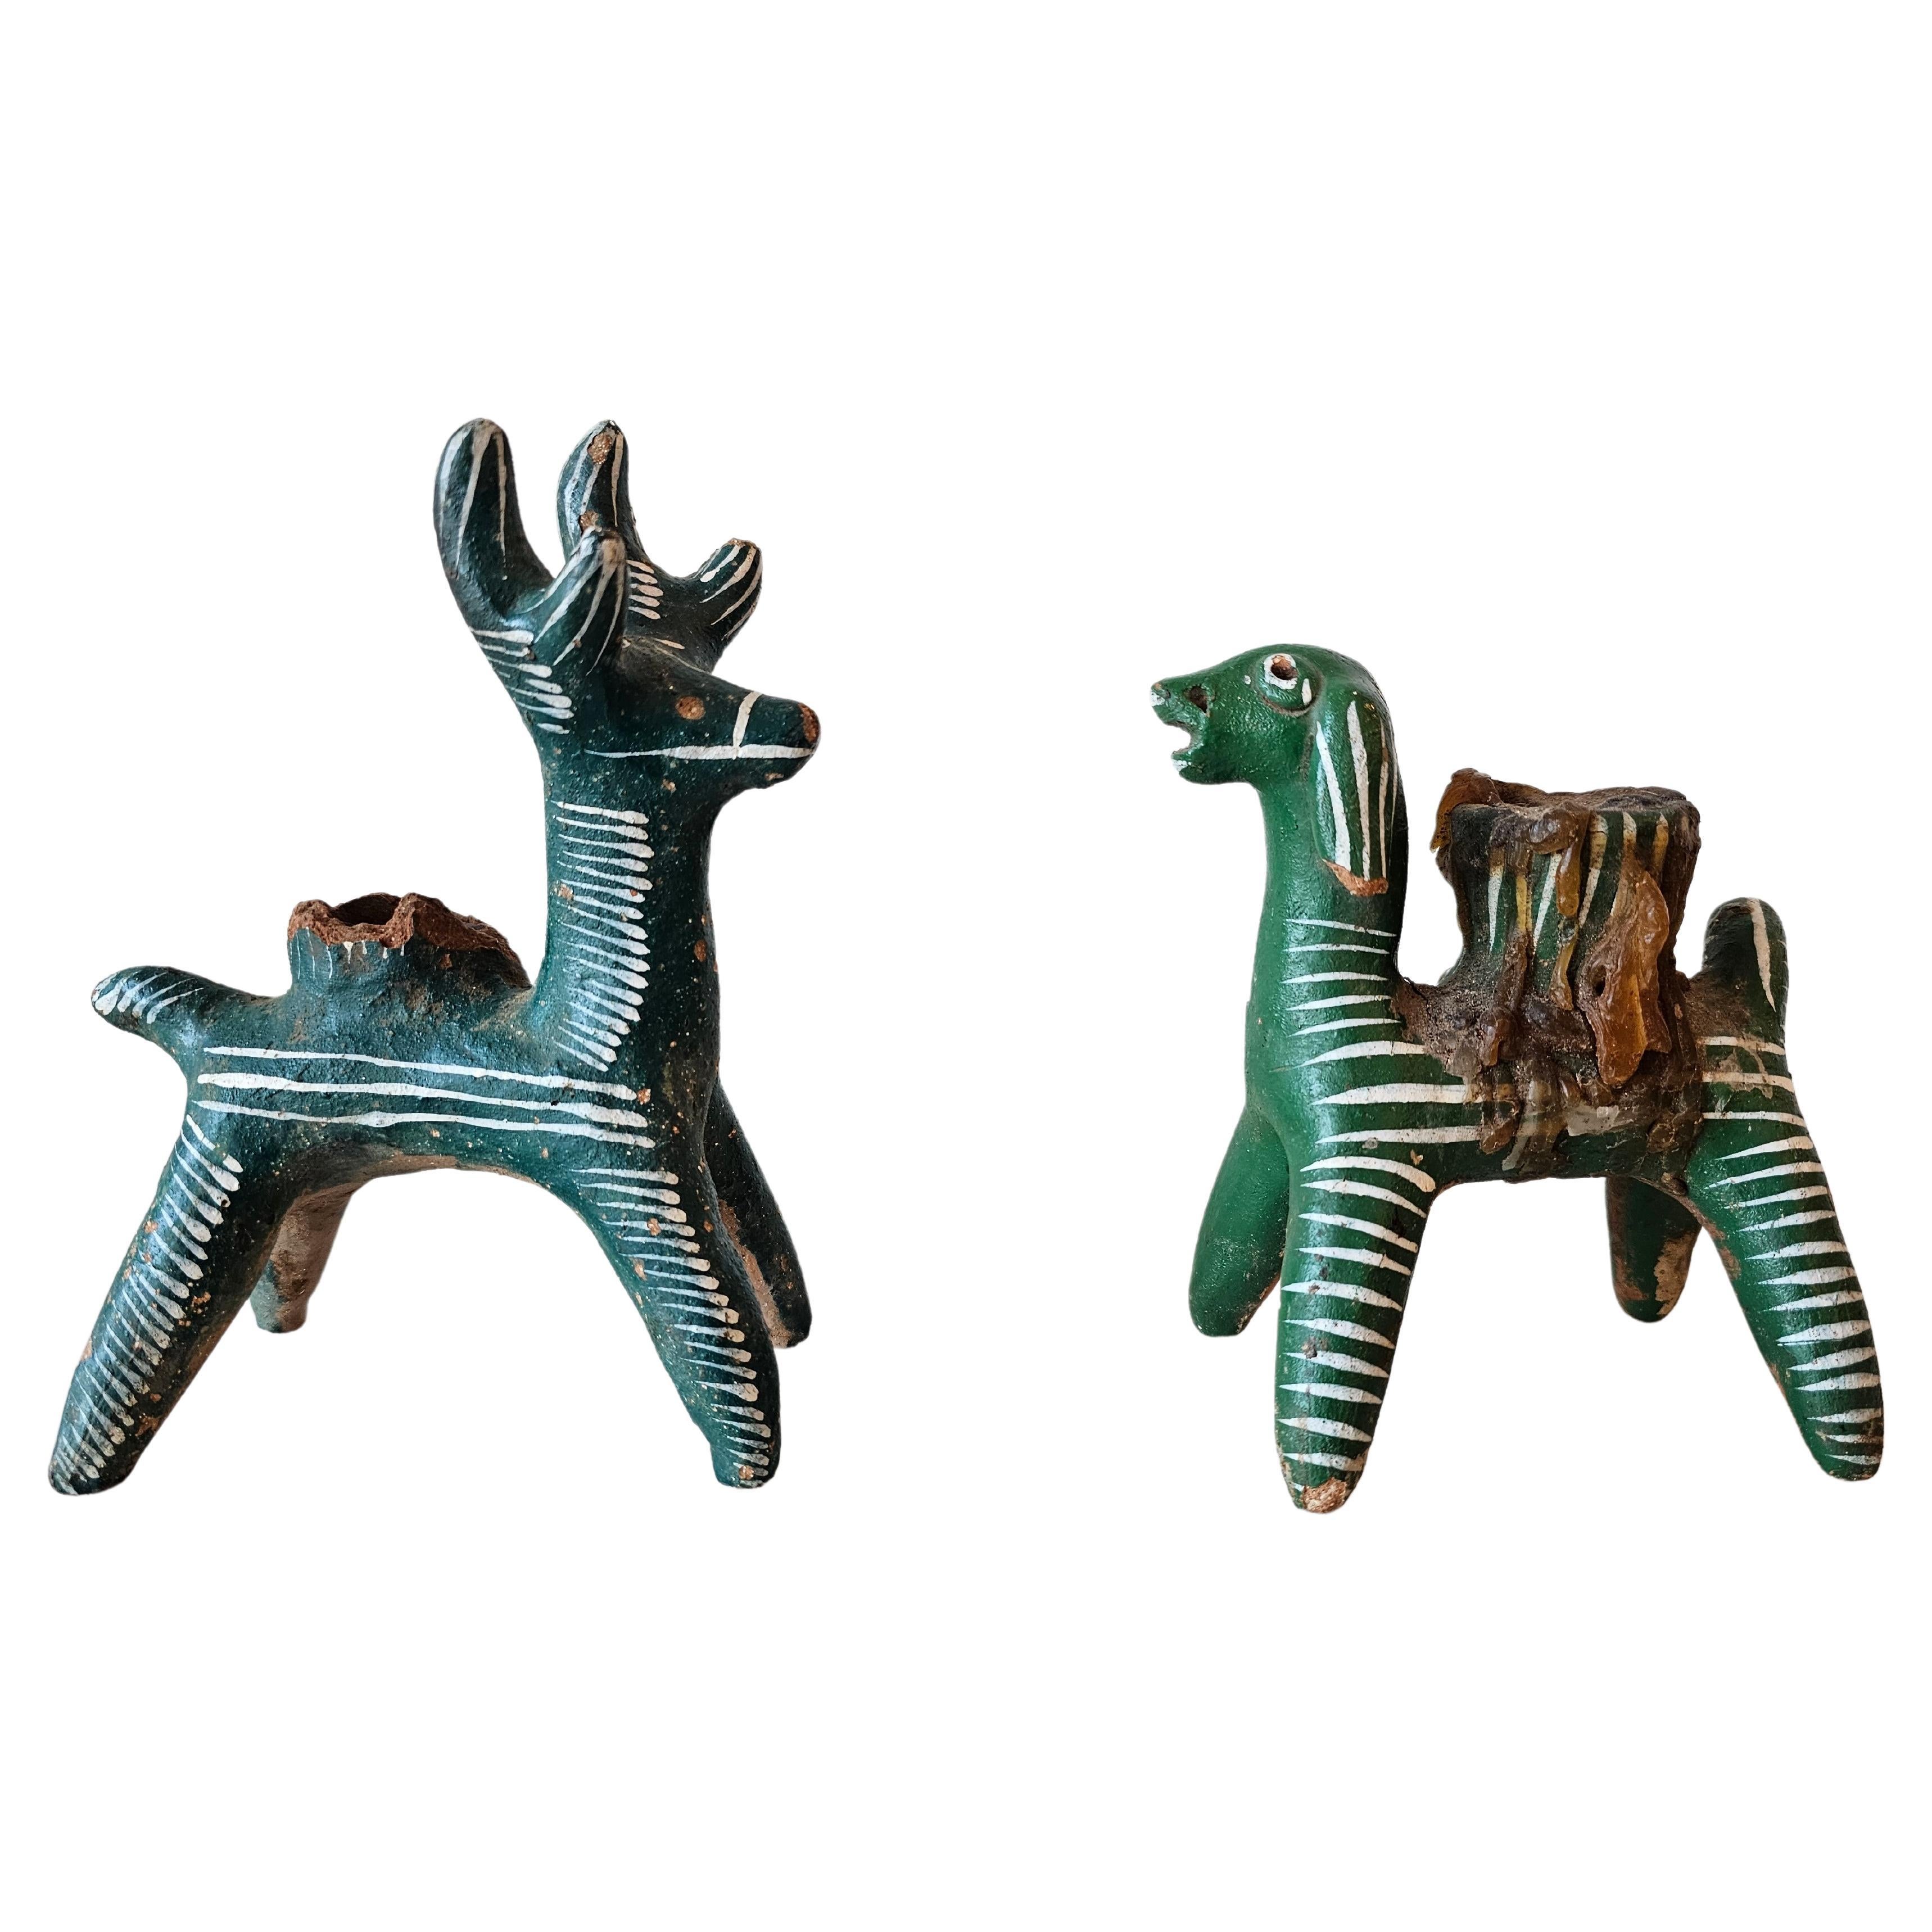 Vintage Nahua-Kerzenhalter mit Tieren aus mexikanischer Volkskunst, Chililico Hidalgo, Nahua-Keramik